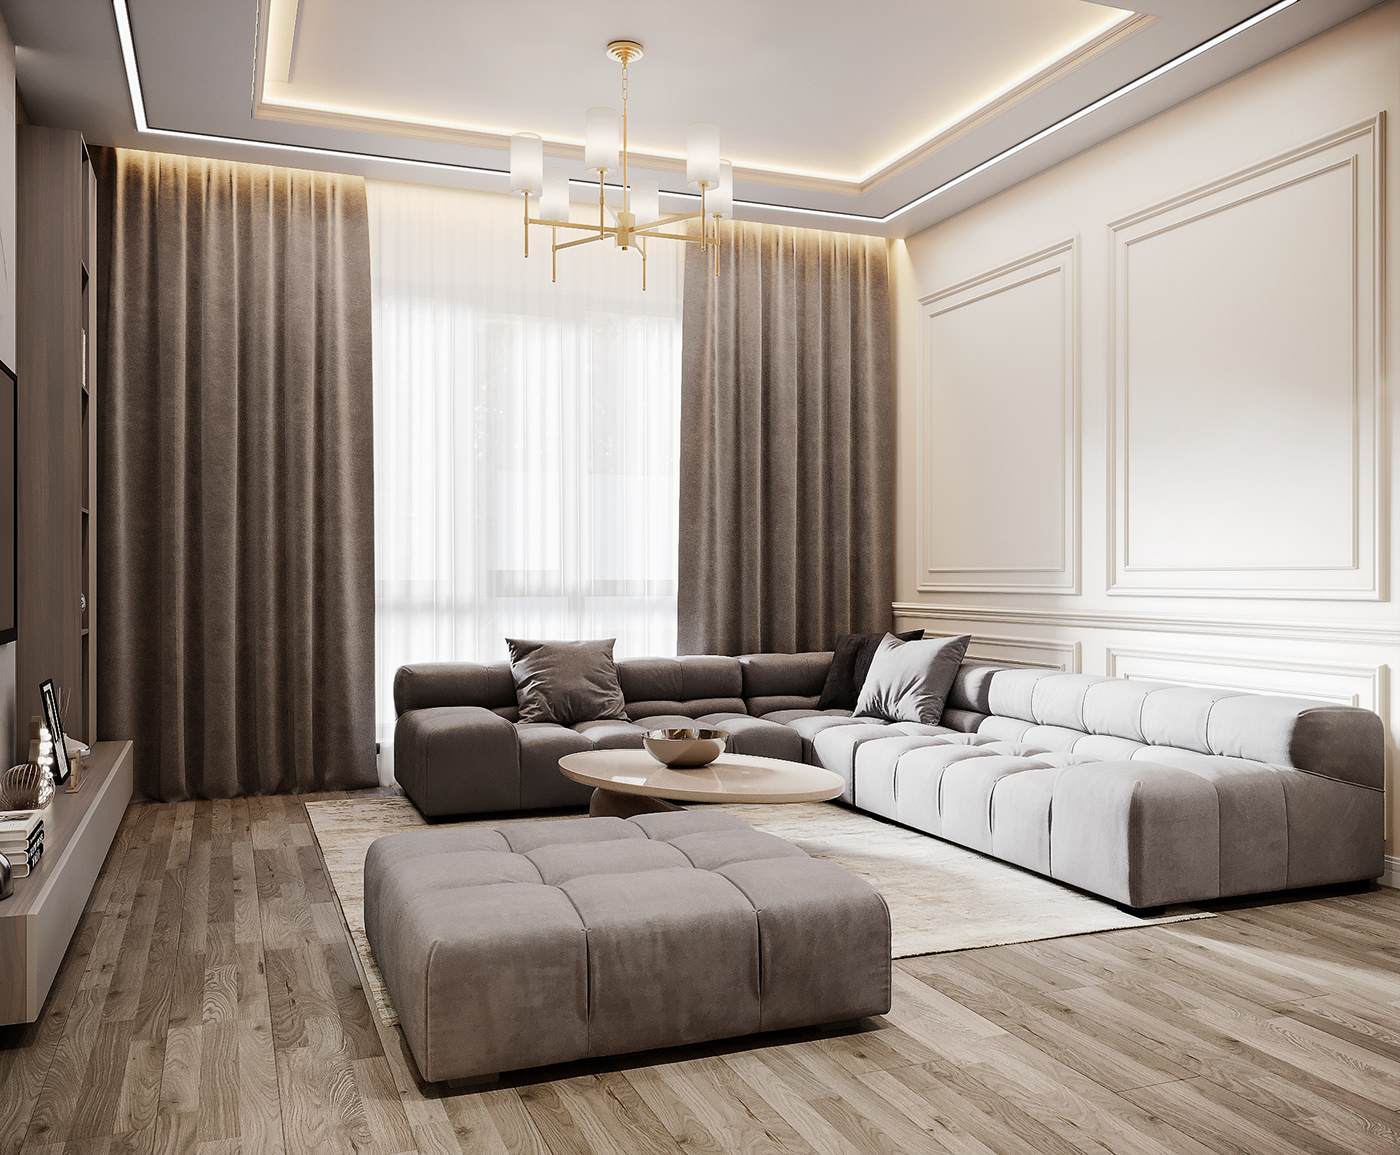 Luxury Design luxury interior luxury interior design 3ds max 3dvisualization 3d vis Moldova living room kitchen Render